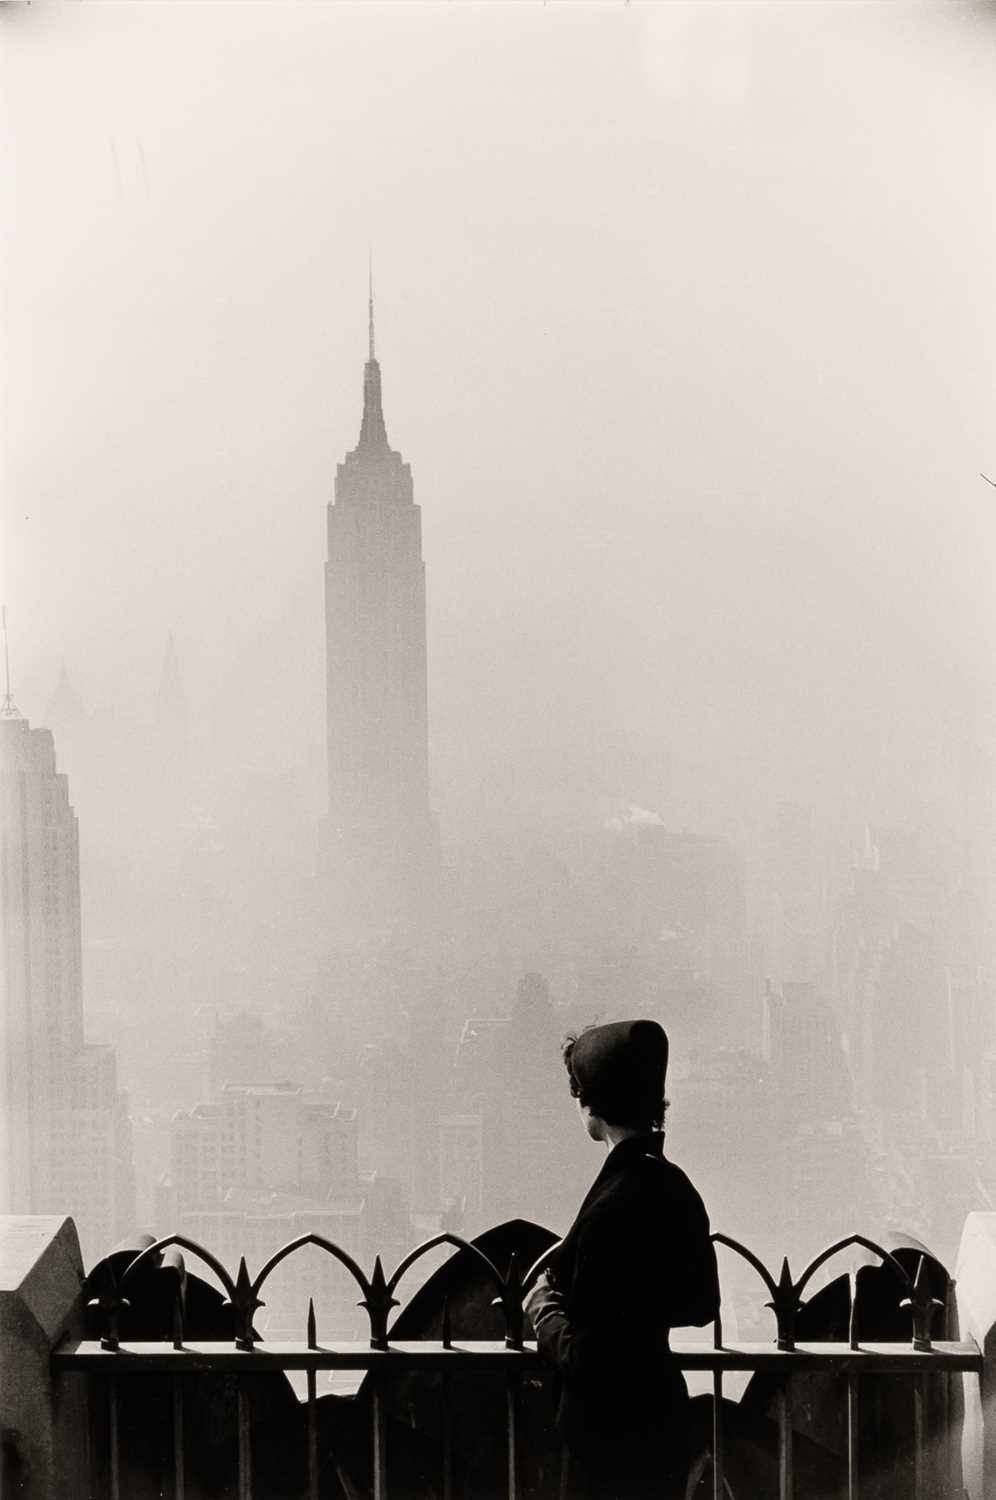 Lot 657 - Eliott Erwitt: New York City, (Empire State Building), 1955